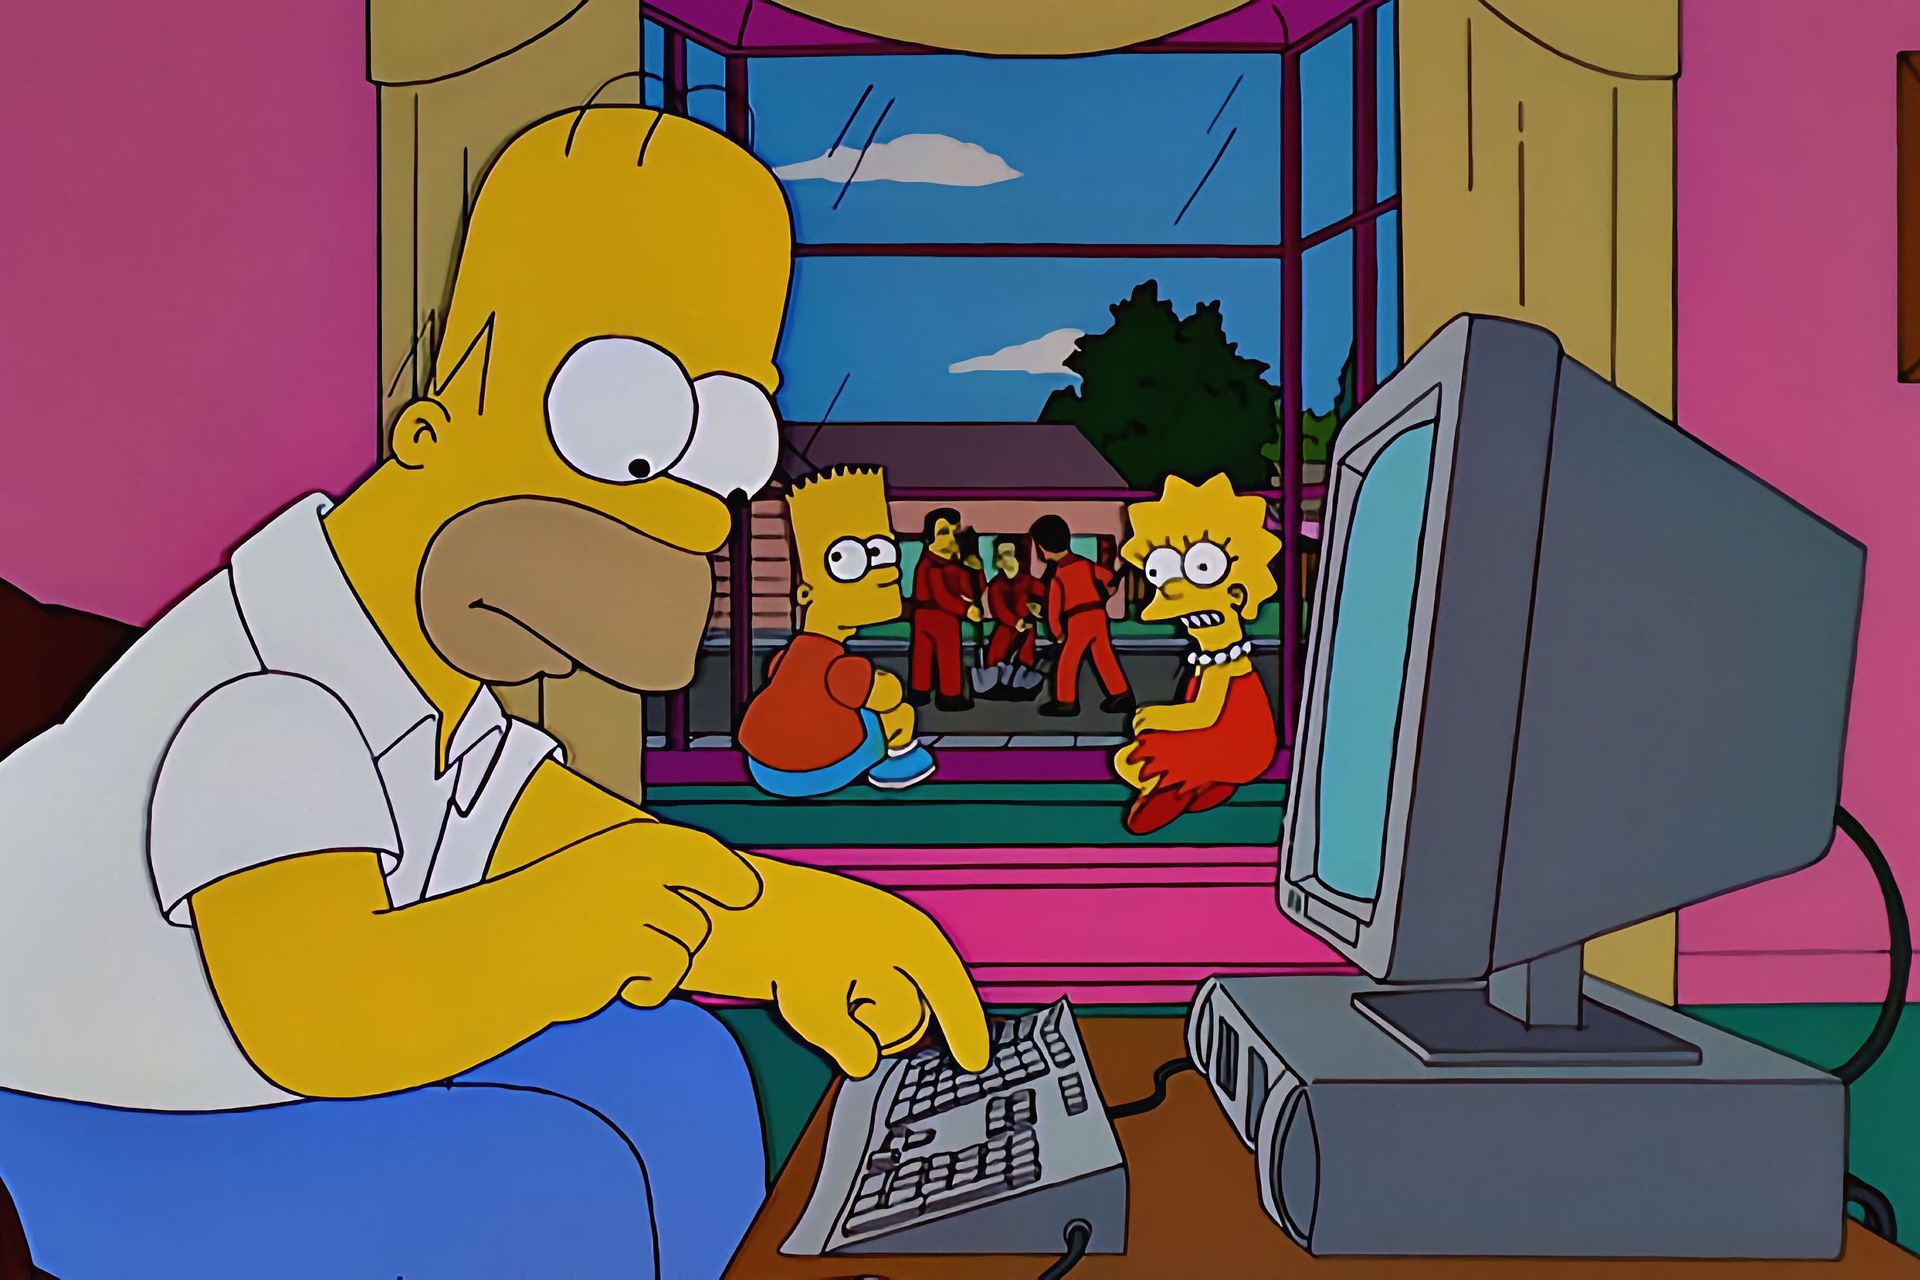 ASV multfilmu seriāla "Simpsoni" galvenais varonis Homērs Džejs Simpsons pie datora